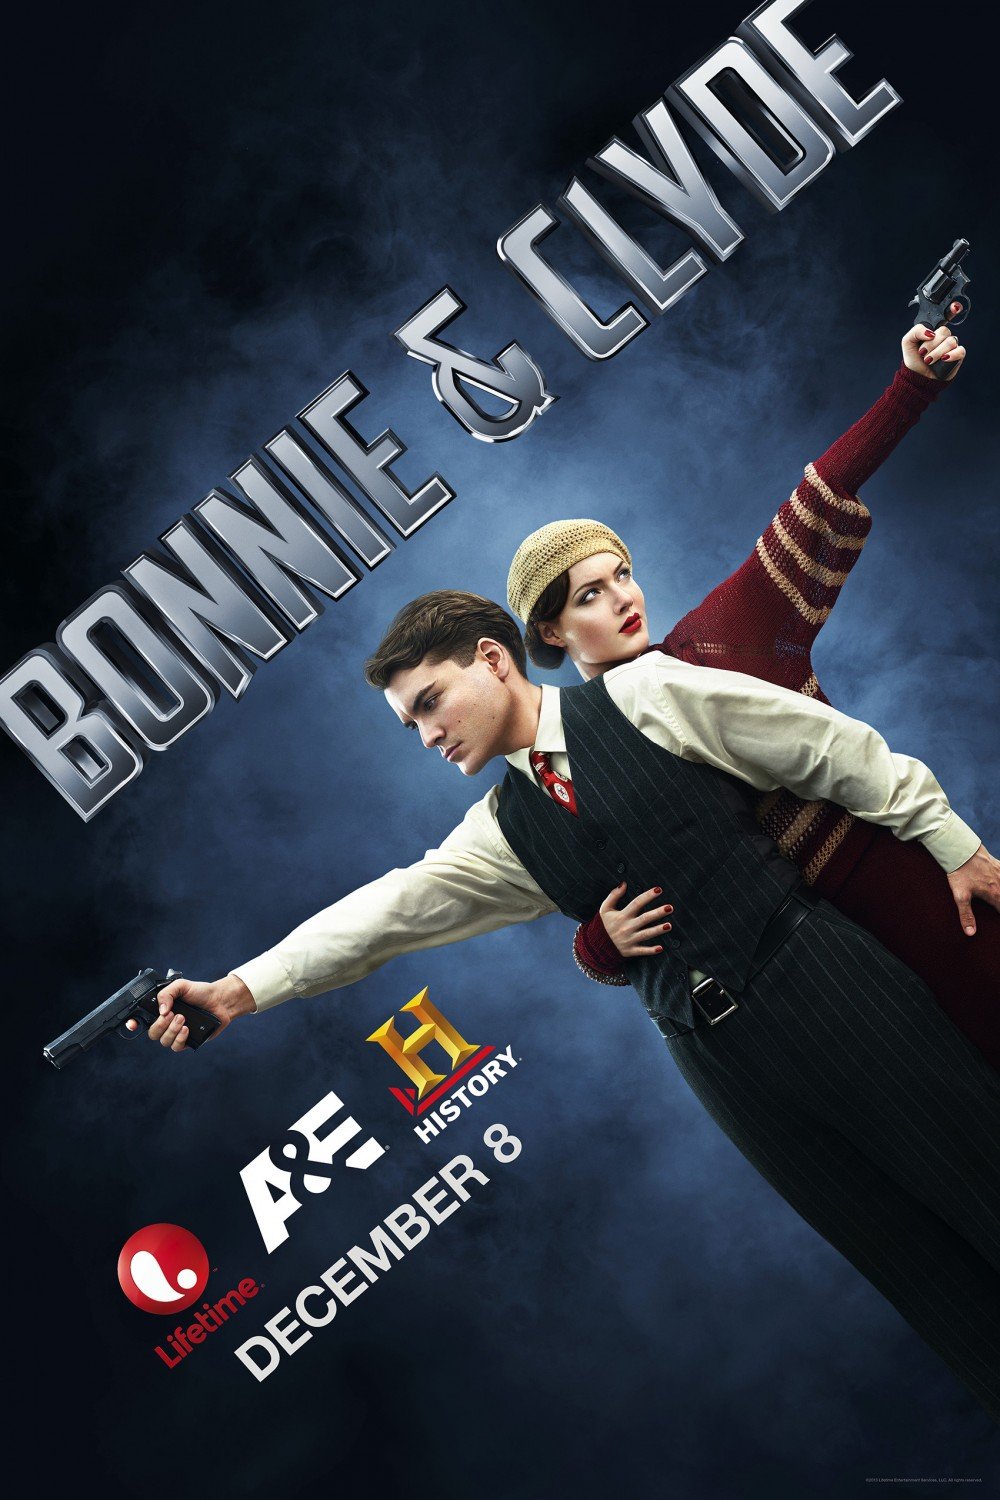 L'affiche du film Bonnie & Clyde